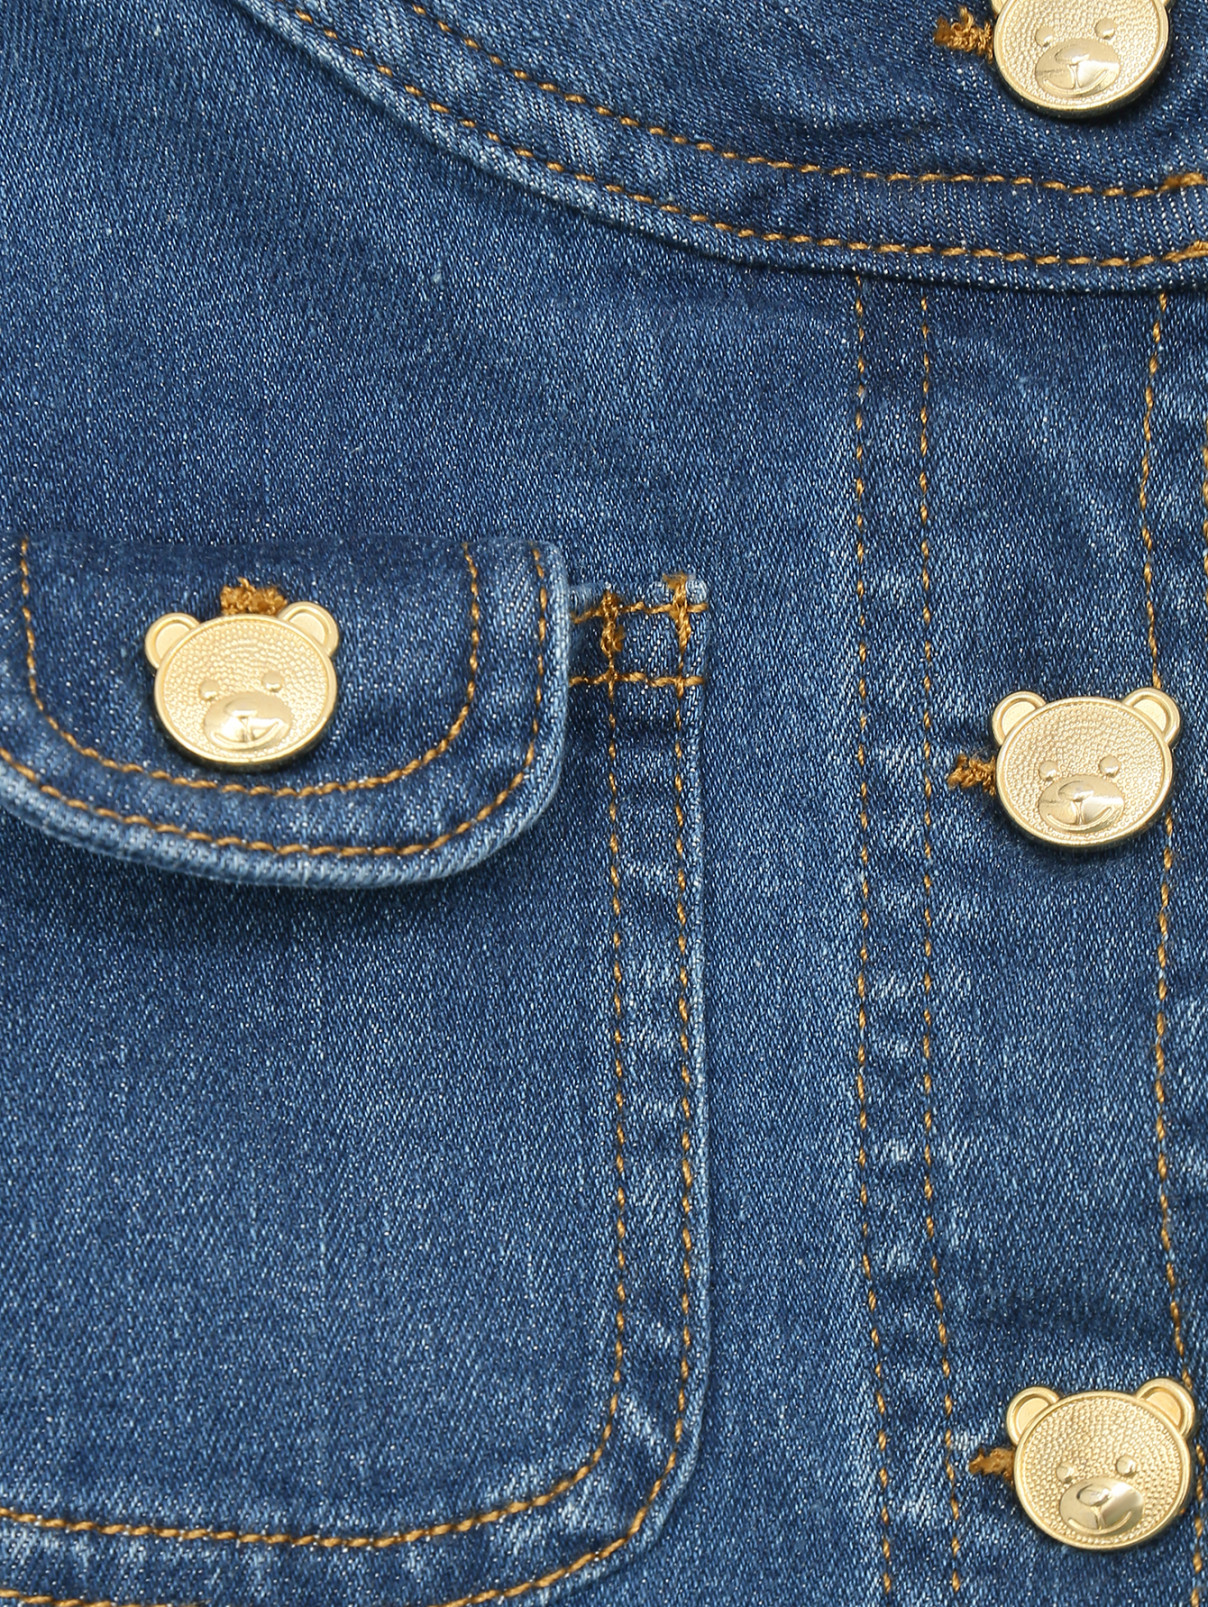 Джинсовая куртка с фигурными пуговицами Moschino  –  Деталь  – Цвет:  Синий